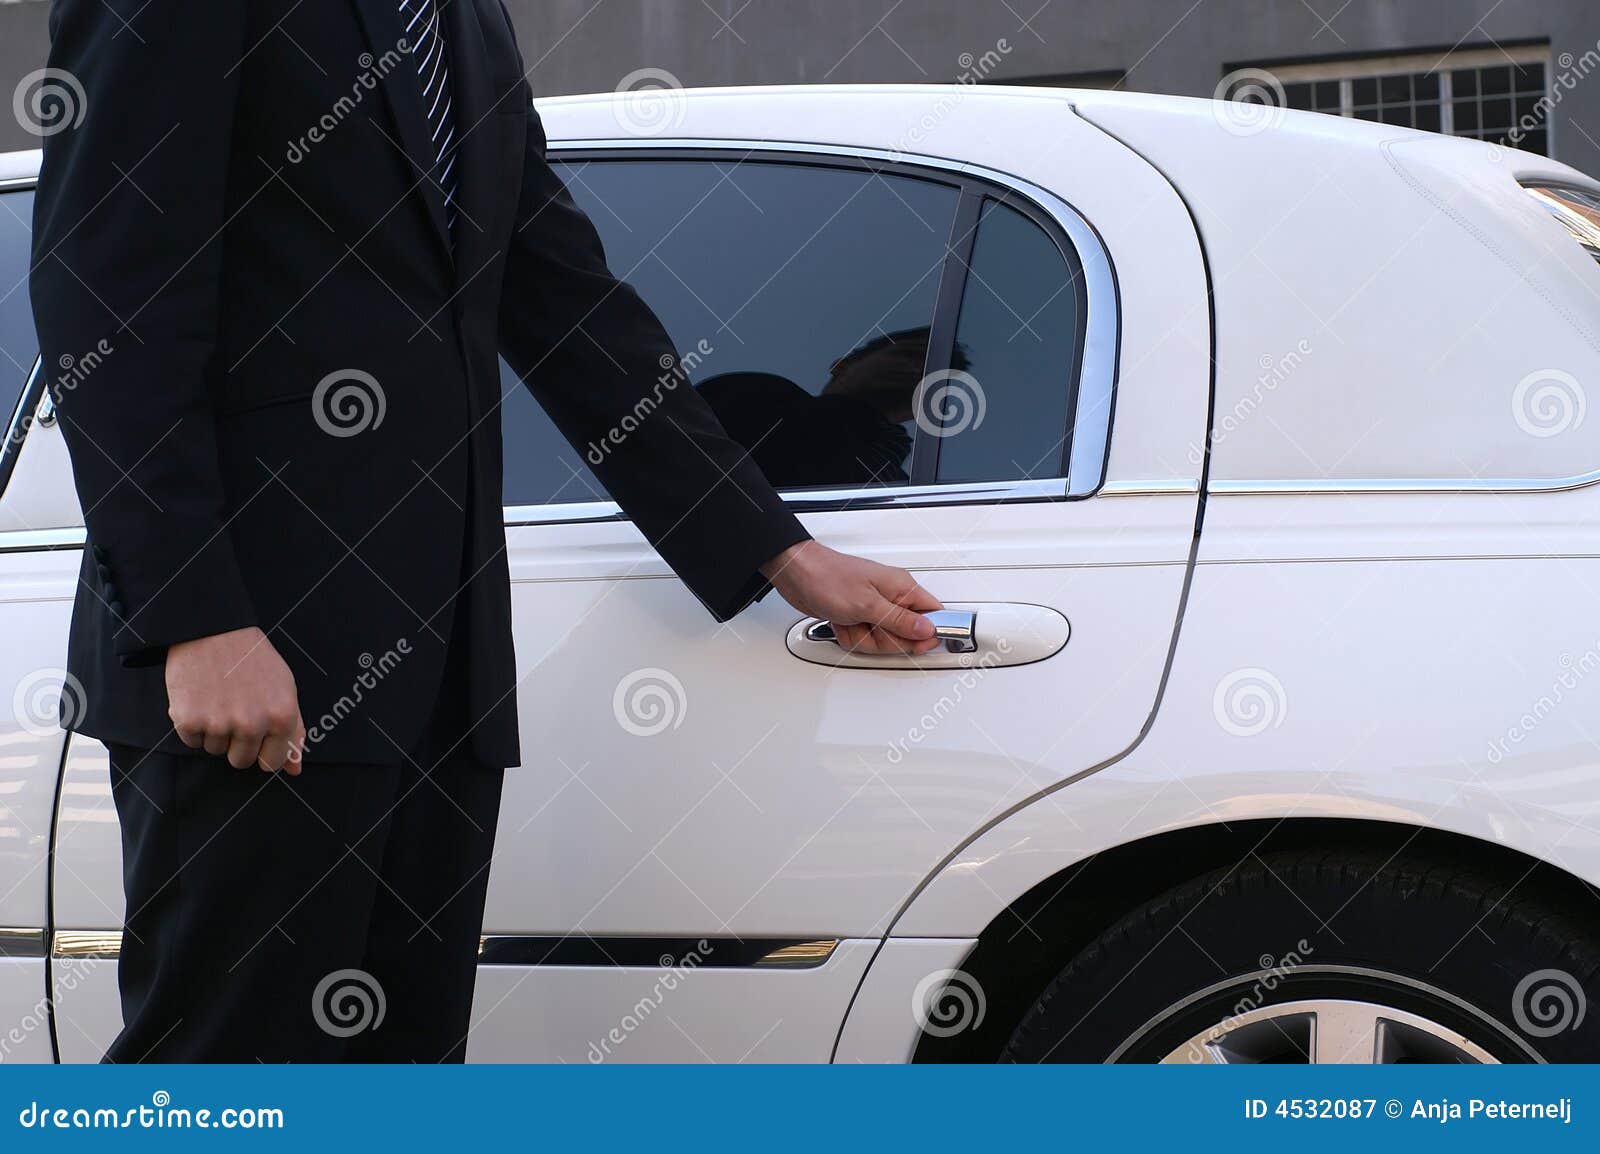 limousine driver